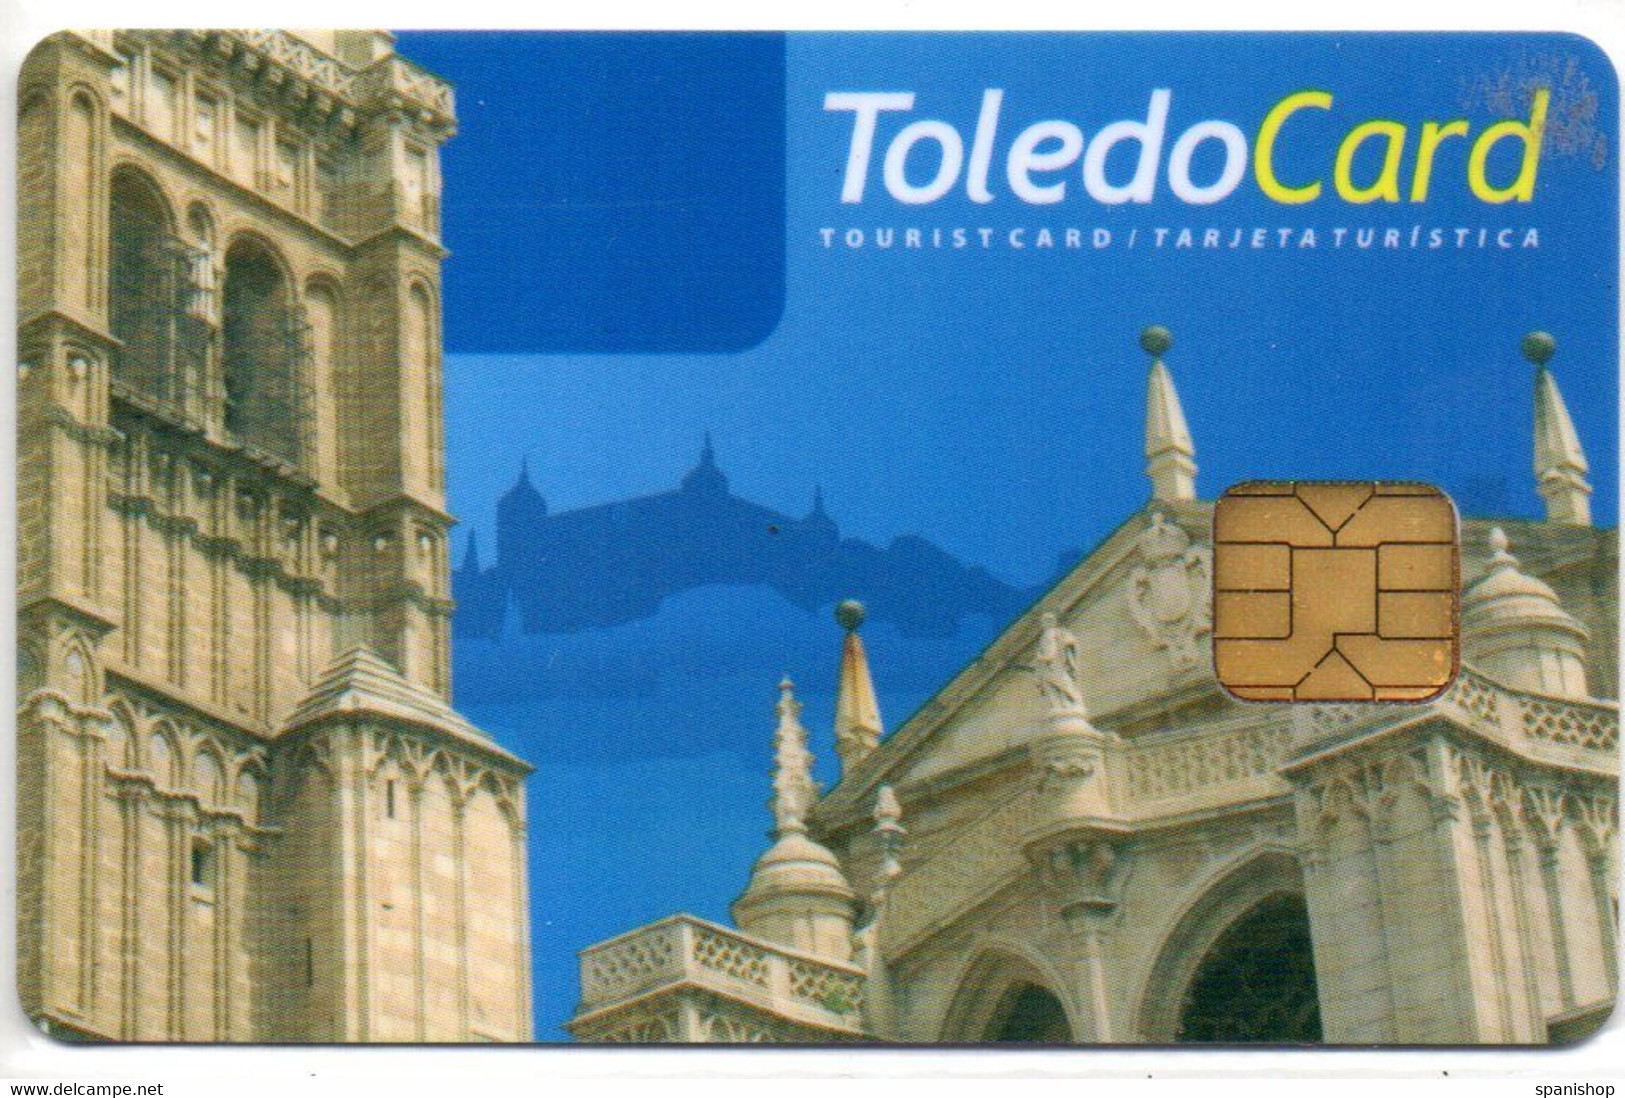 Toledo - Spain Tourist Tourism Card Tarjeta Turística - Material Und Zubehör